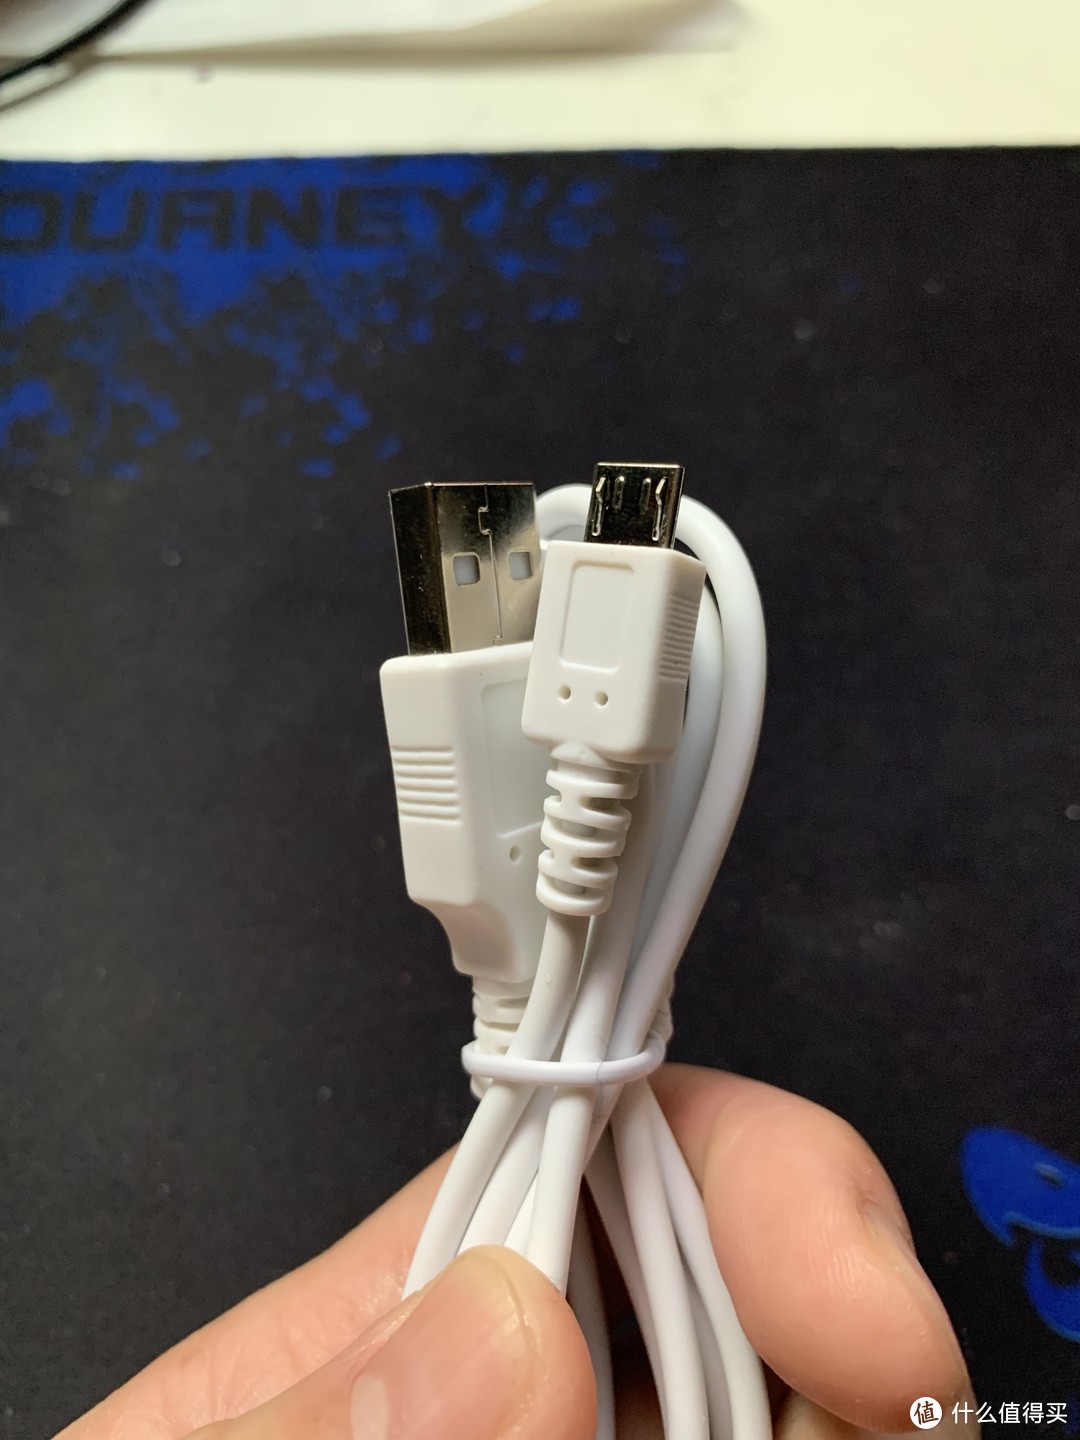 图书馆猿のOPPLE 欧普 USB 充电夹子小台灯 简单晒